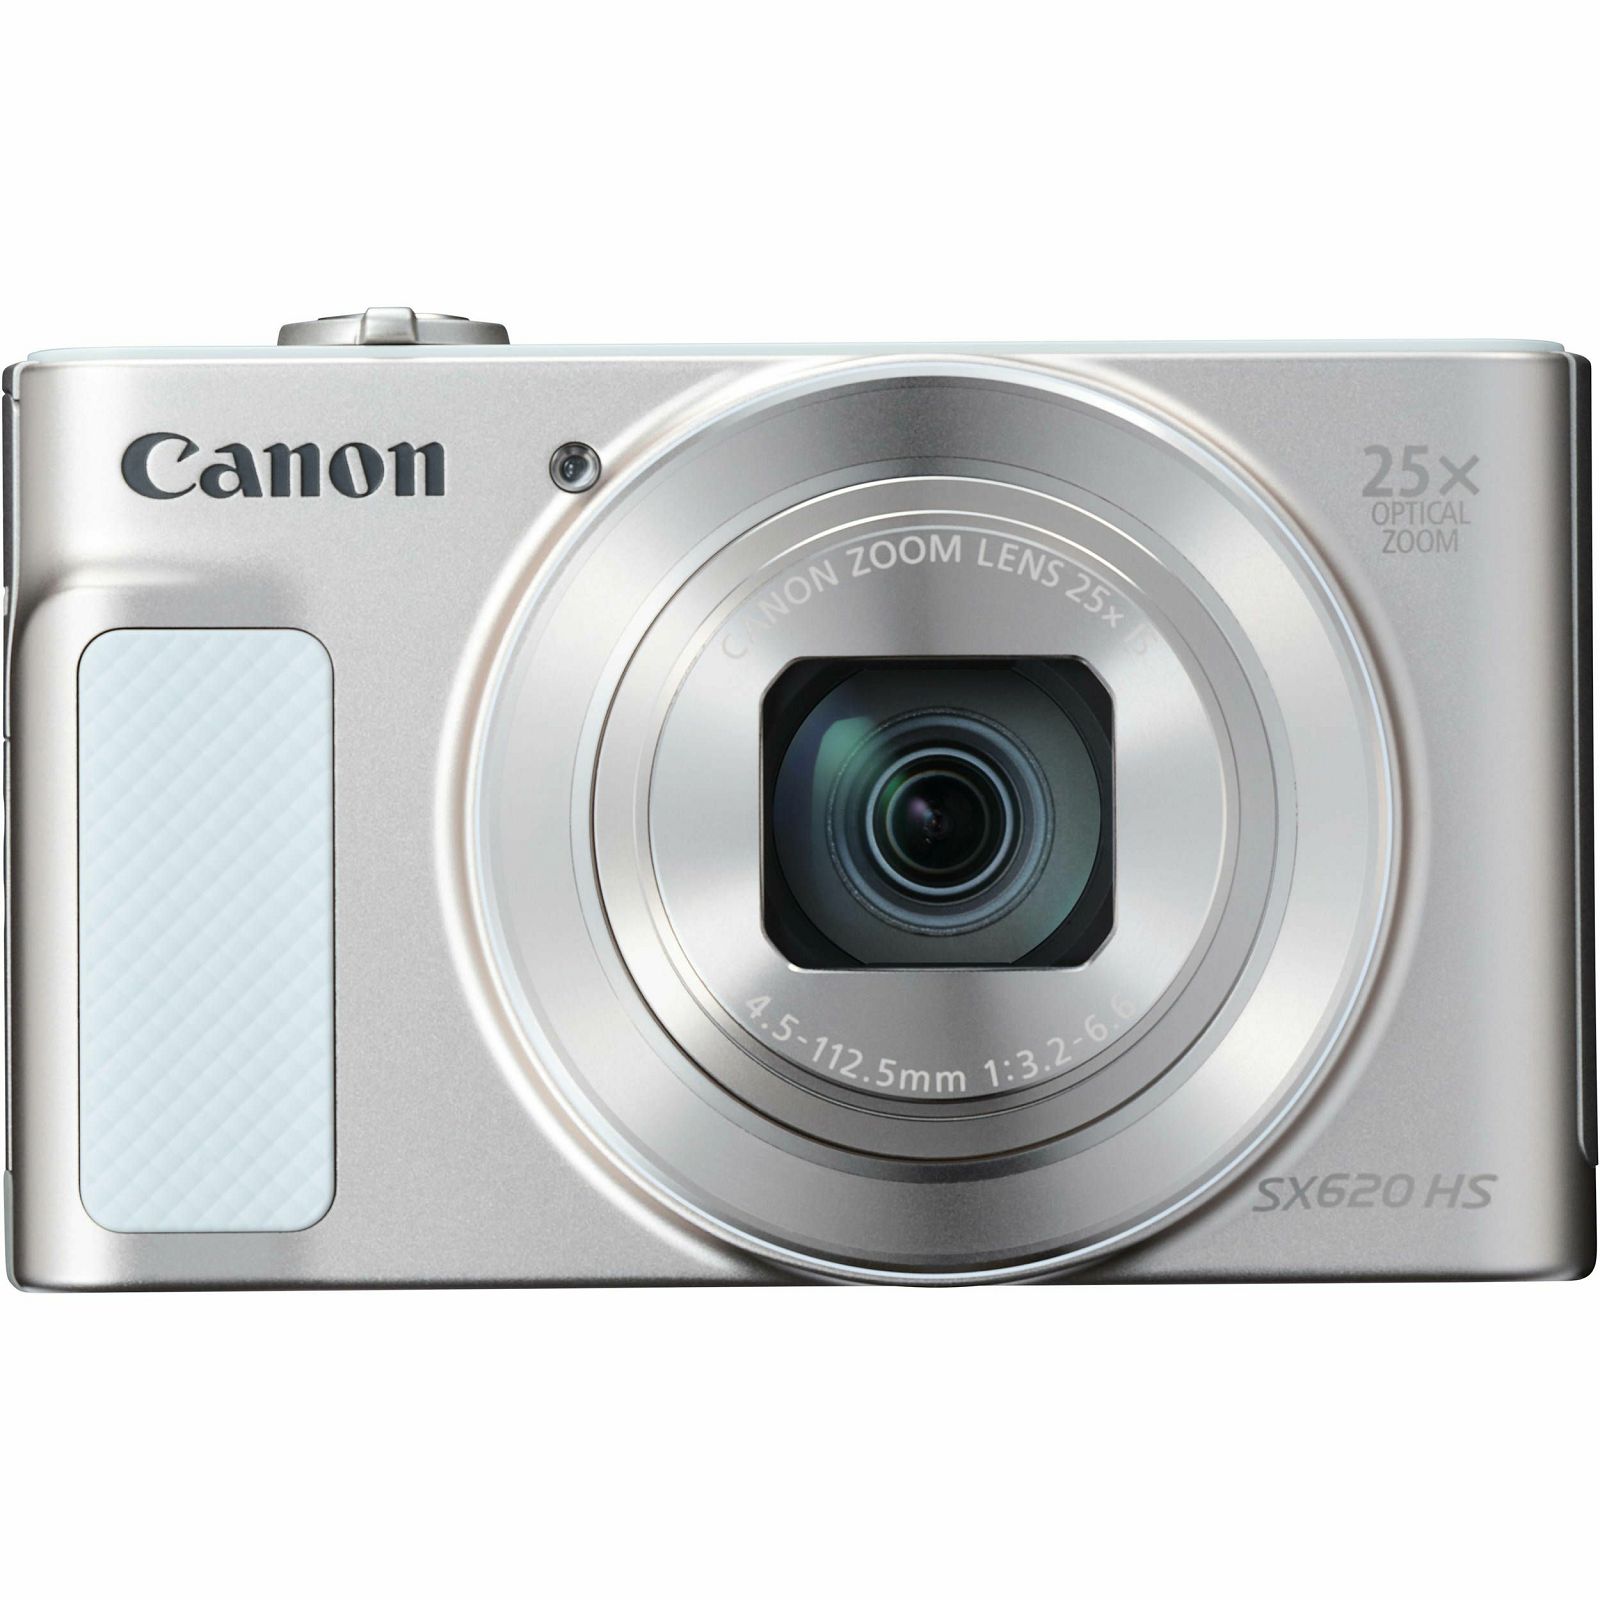 Canon Powershot SX620 HS Essentials KIT White bijeli digitalni fotoaparat SX620 HS SX 620